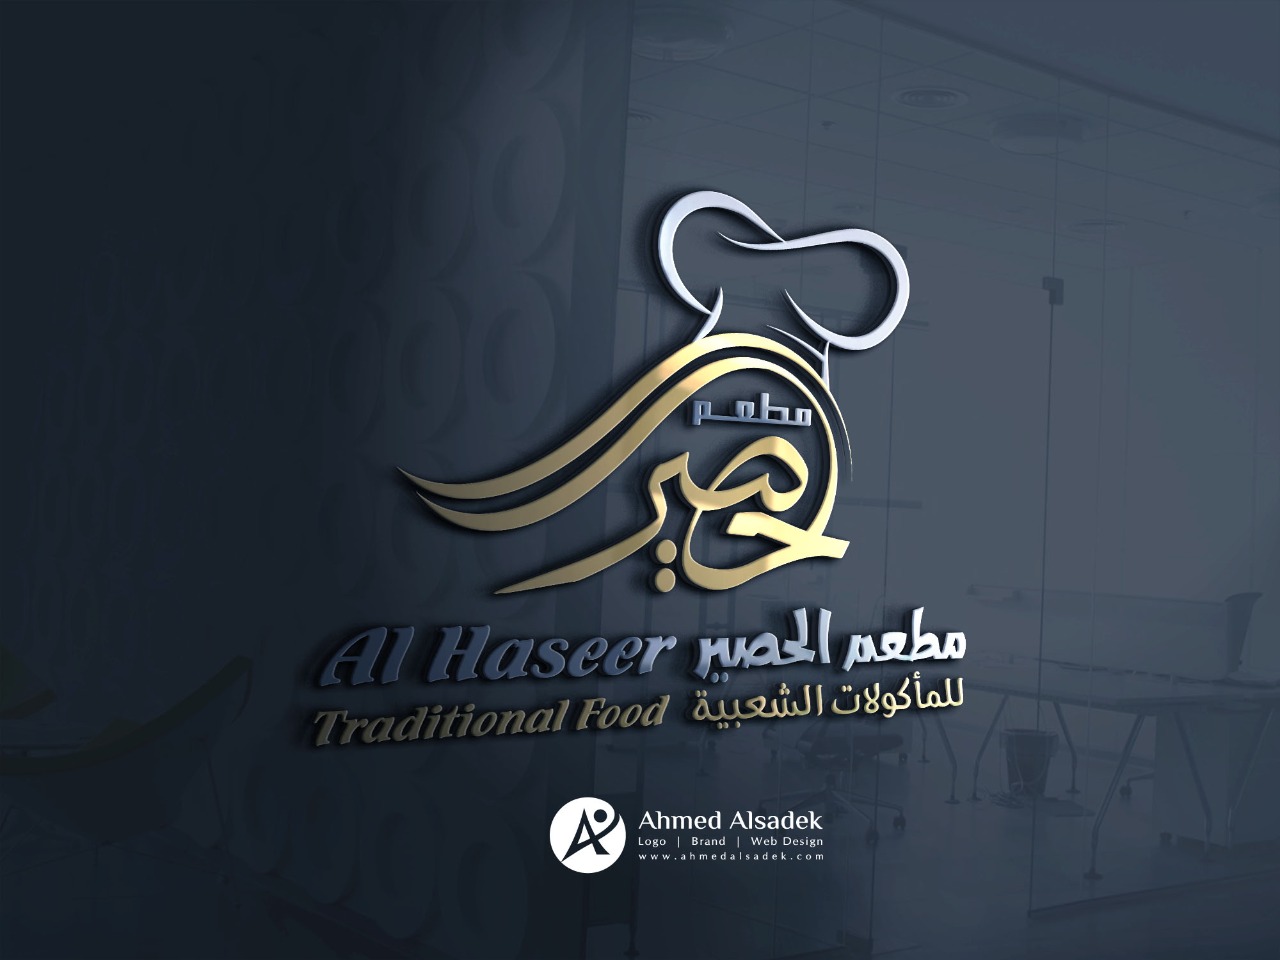 Logo design for Al Haseer Restaurant for popular foods in Dubai - UAE